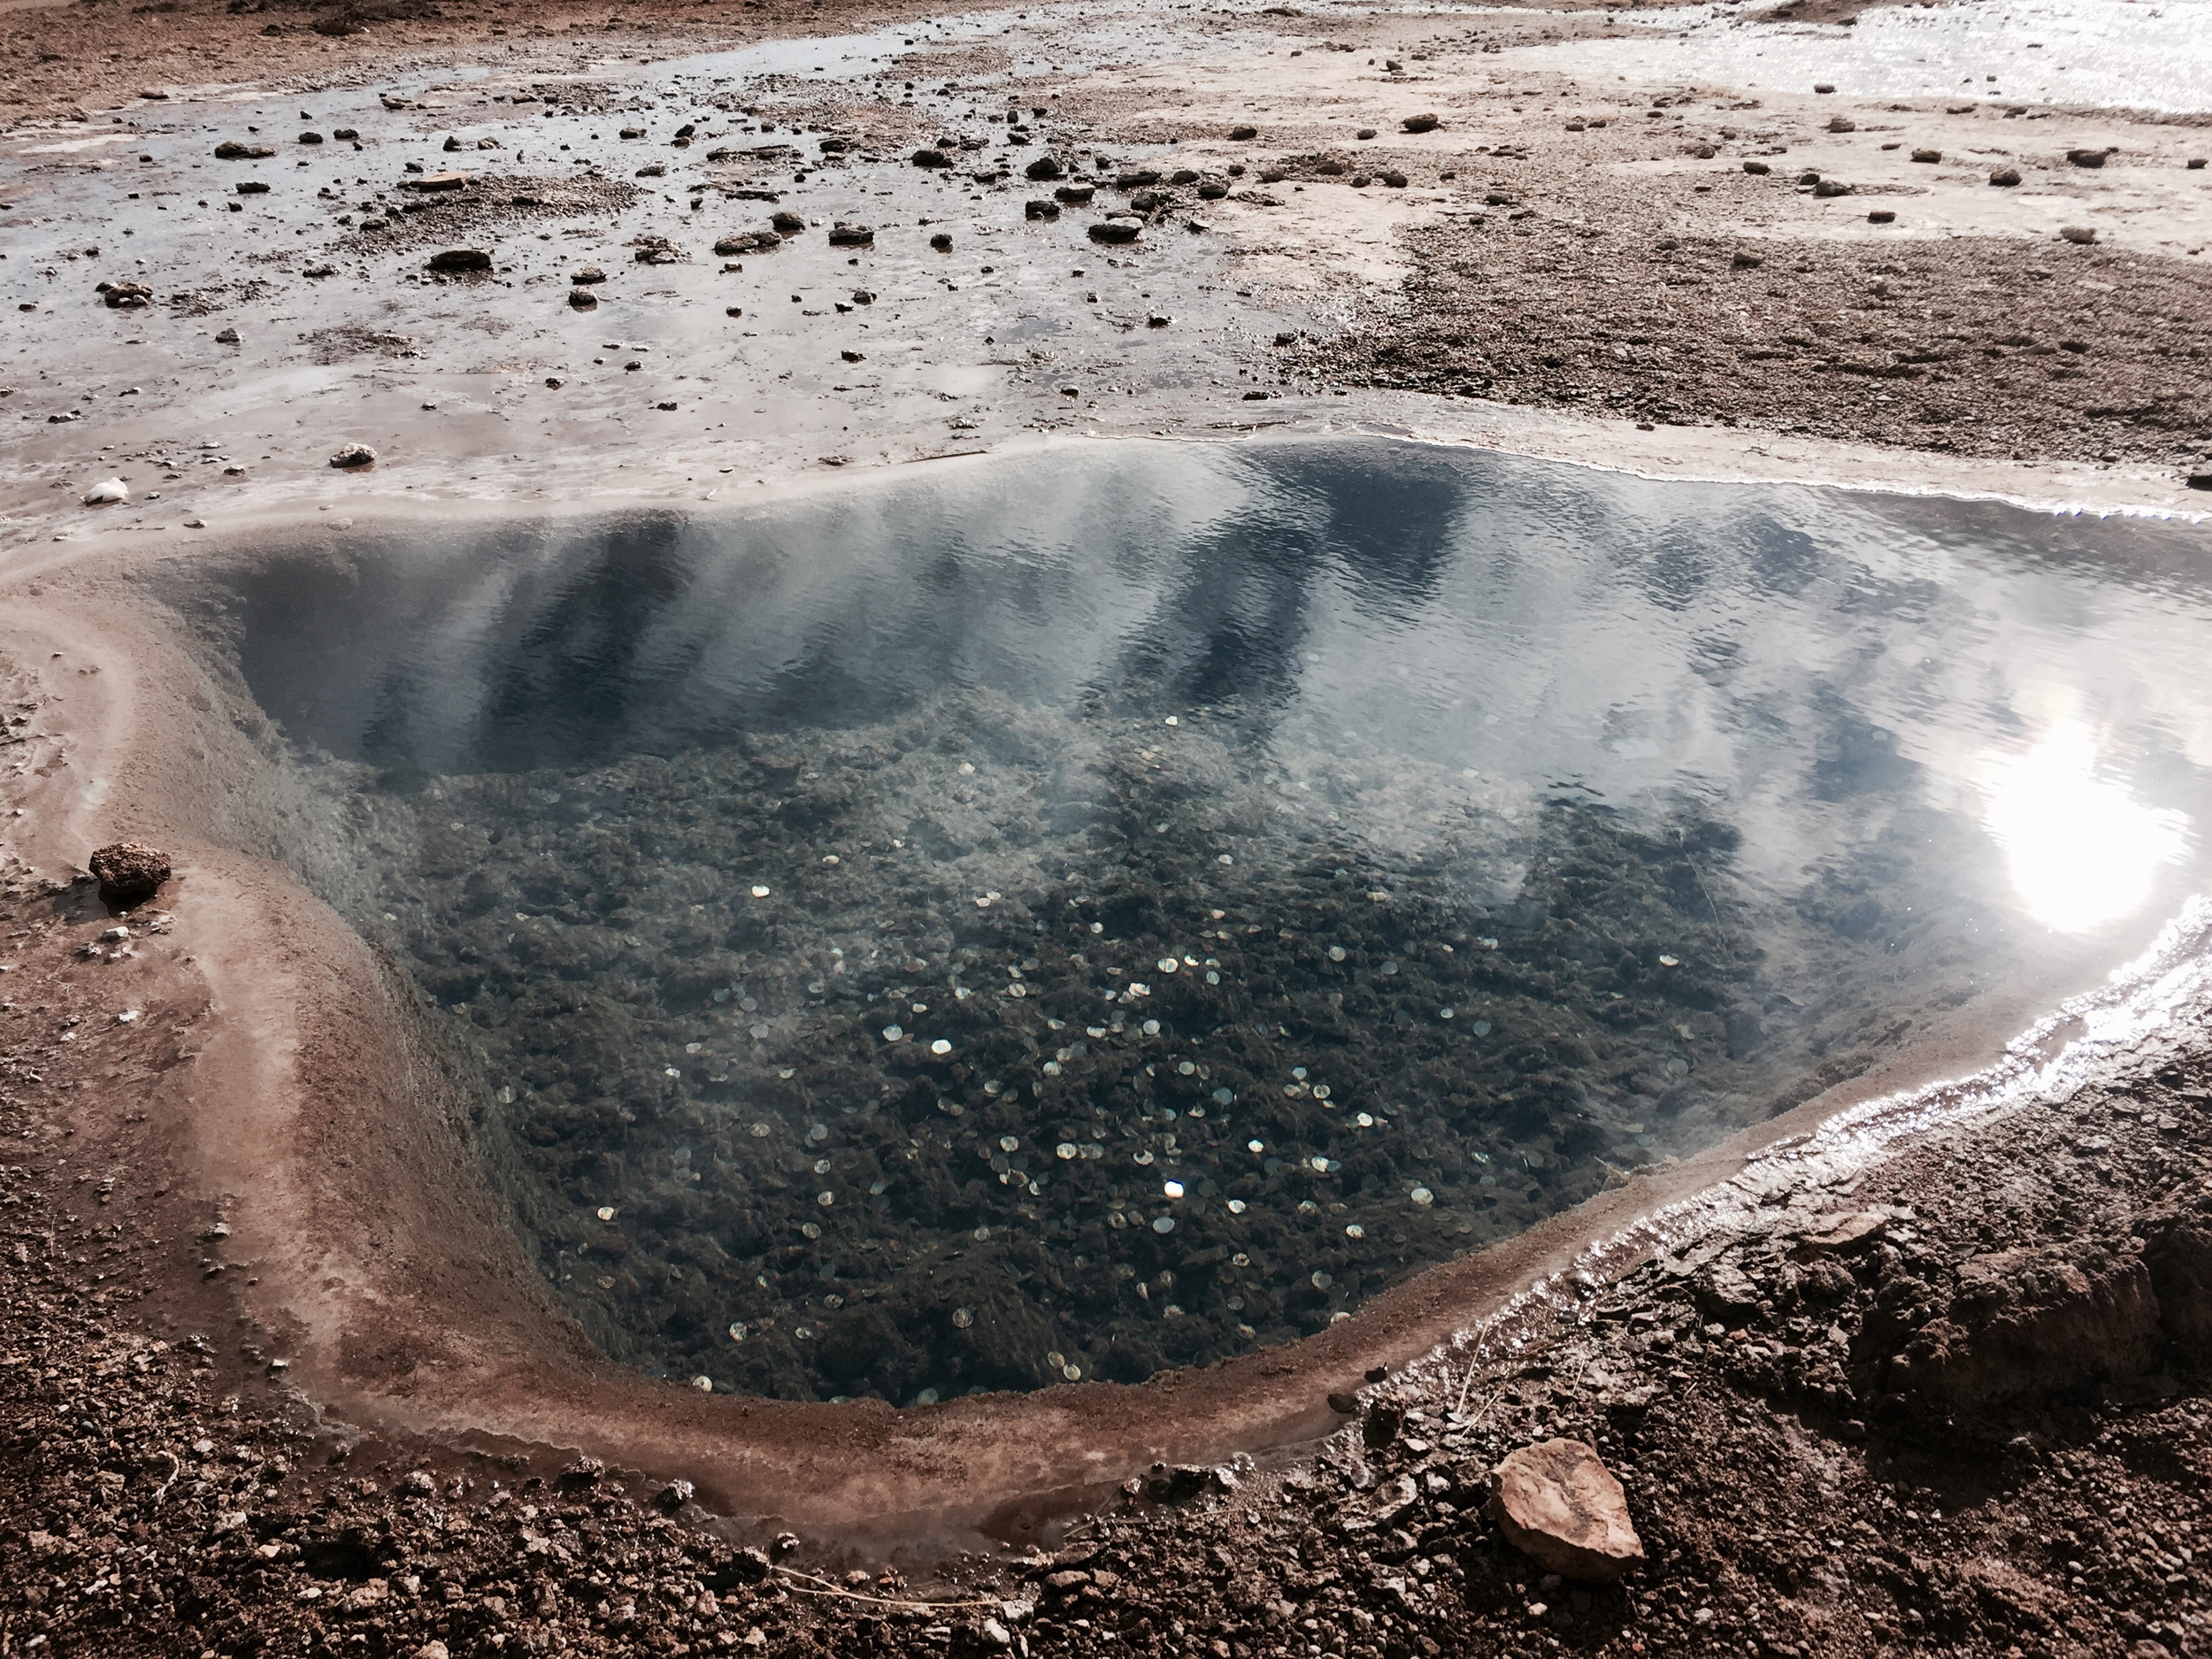 Pièces de monnaie au fond d'un bassin d'eau chaude.